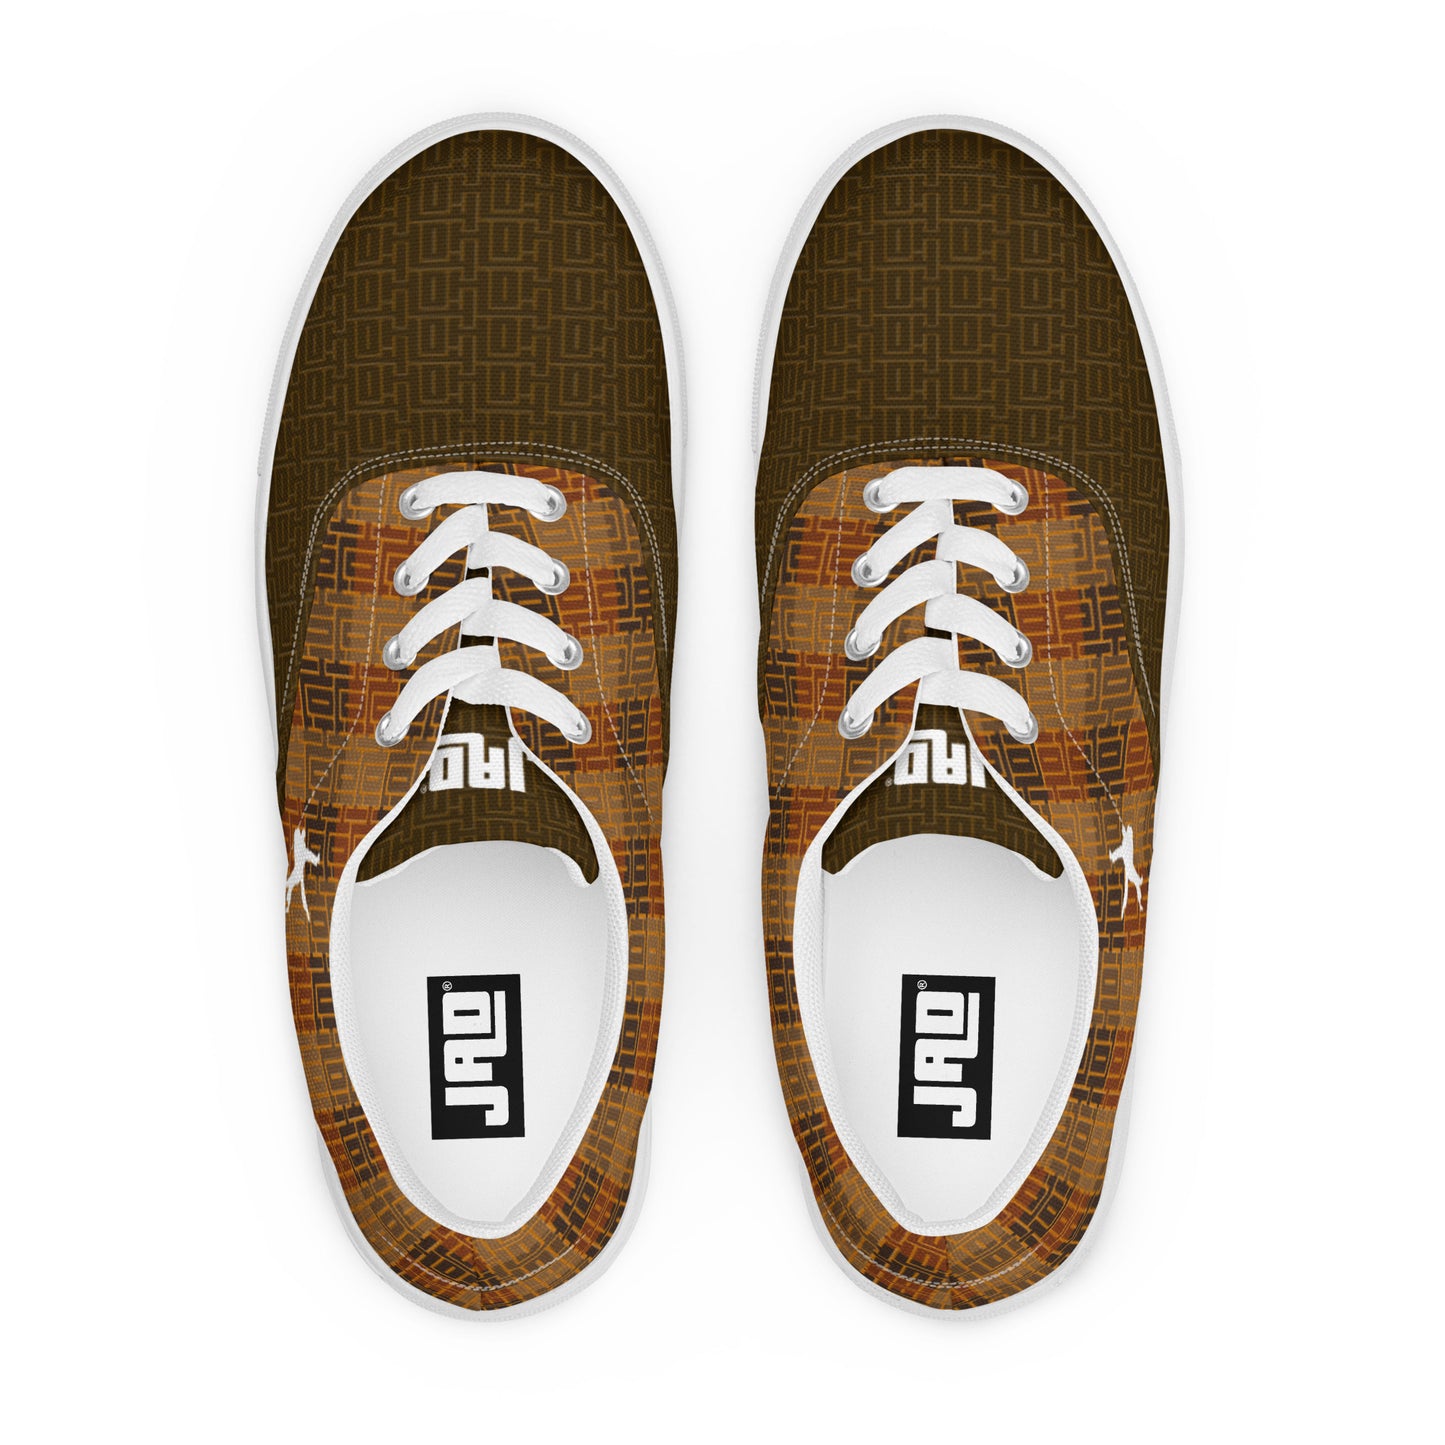 Men’s lace-up canvas shoes "Brown JAD Pattern"